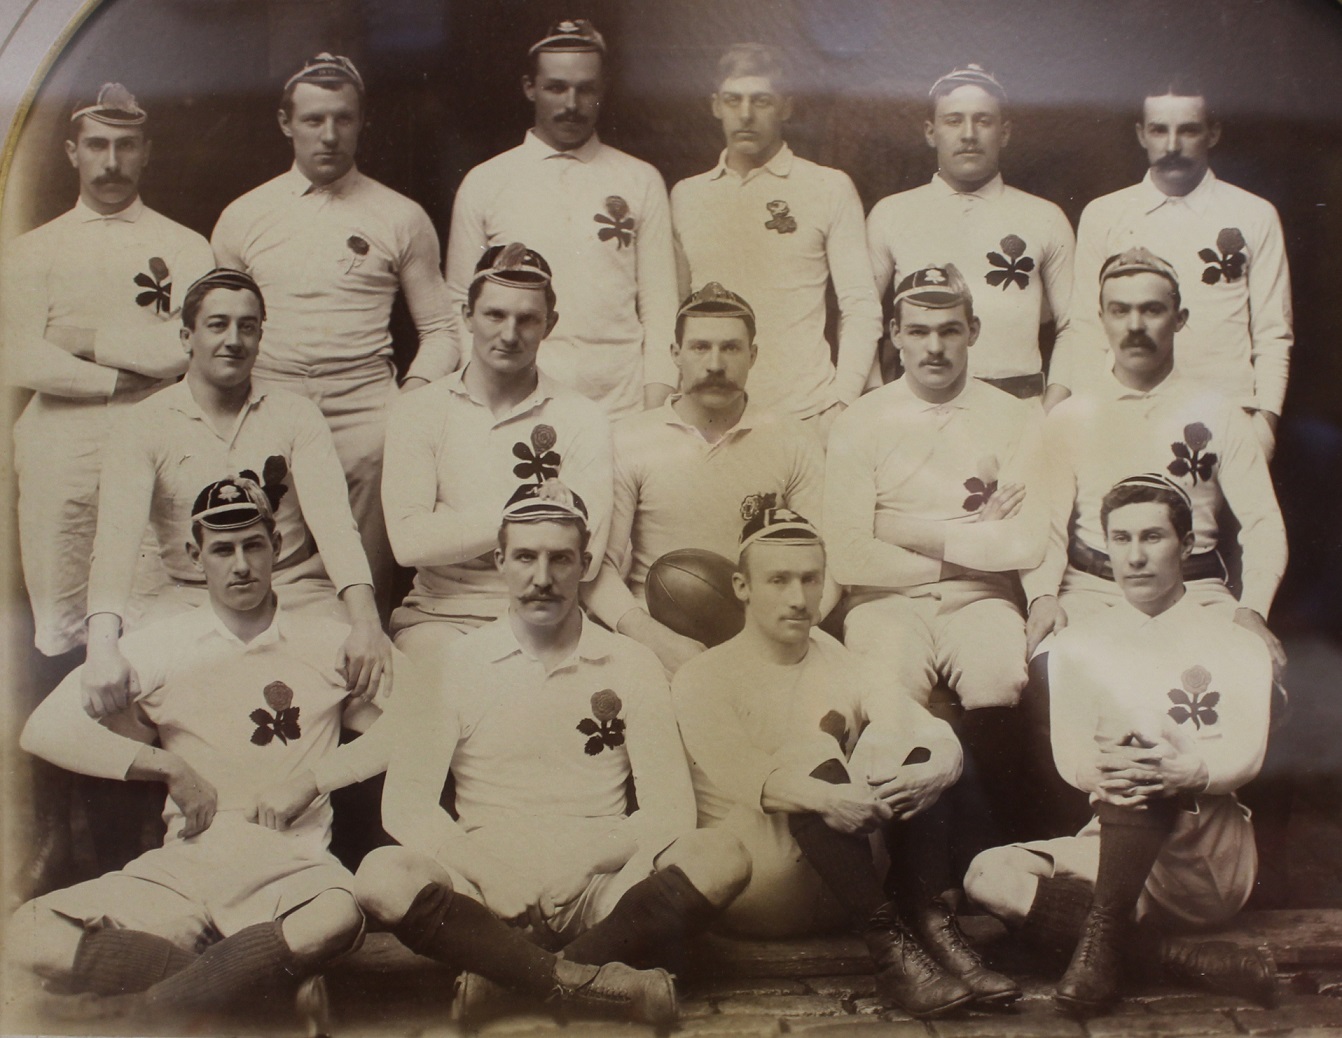 Rugby Memorabilia Society - England v Wales (Dewsbury) Feb 15th 1890